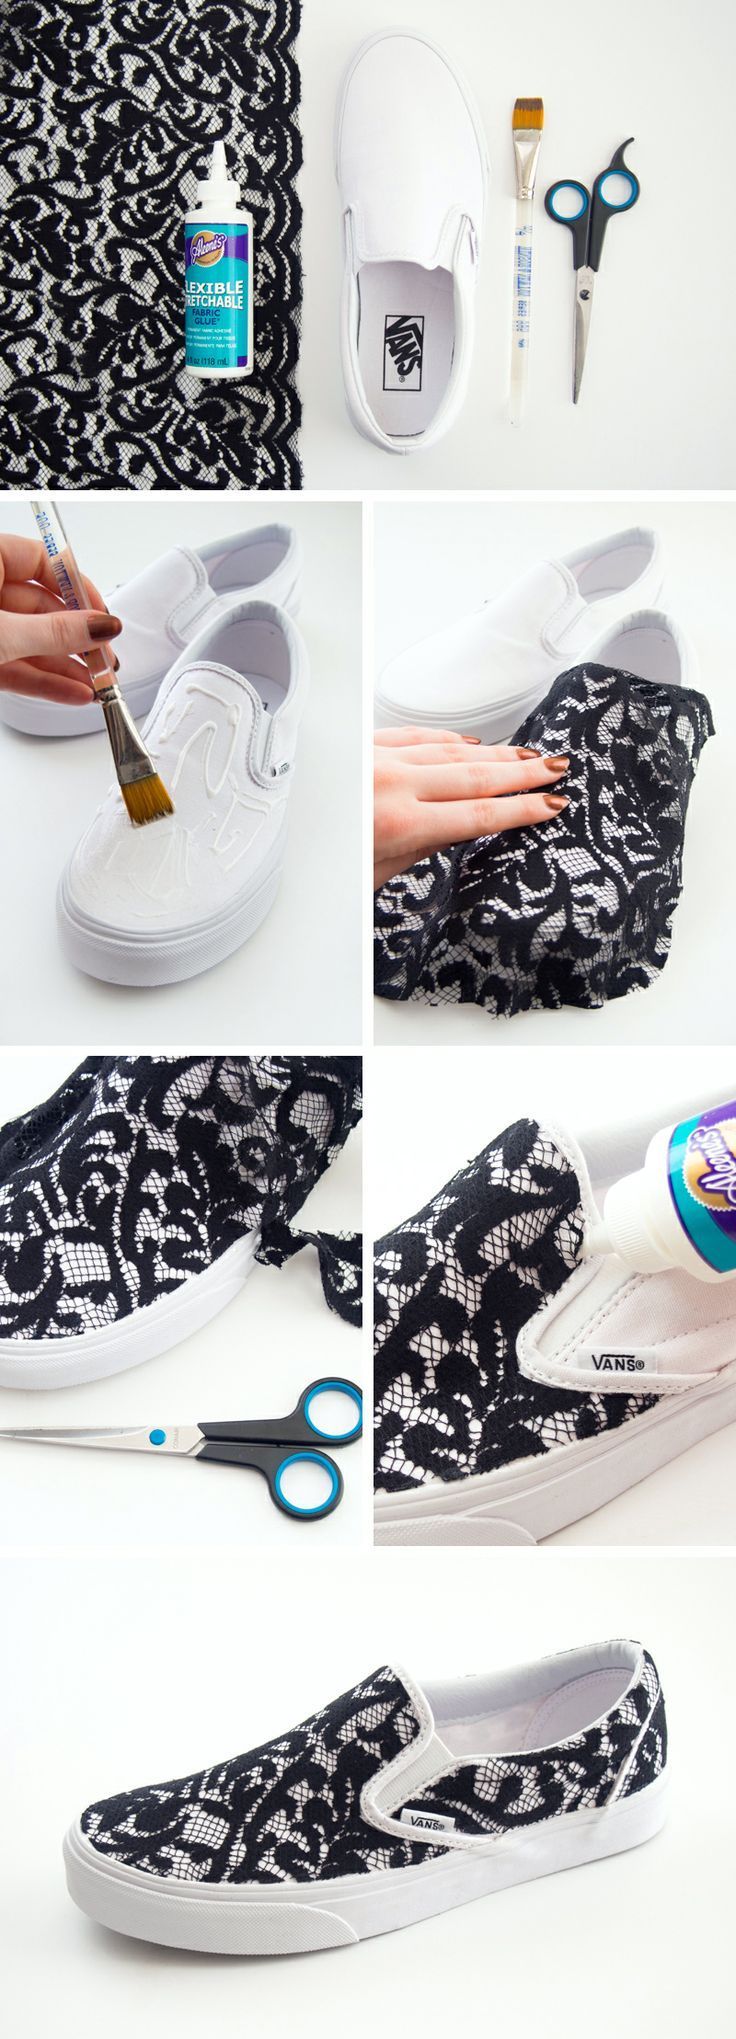 DIY Lace Slip-on Vans Sneakers.